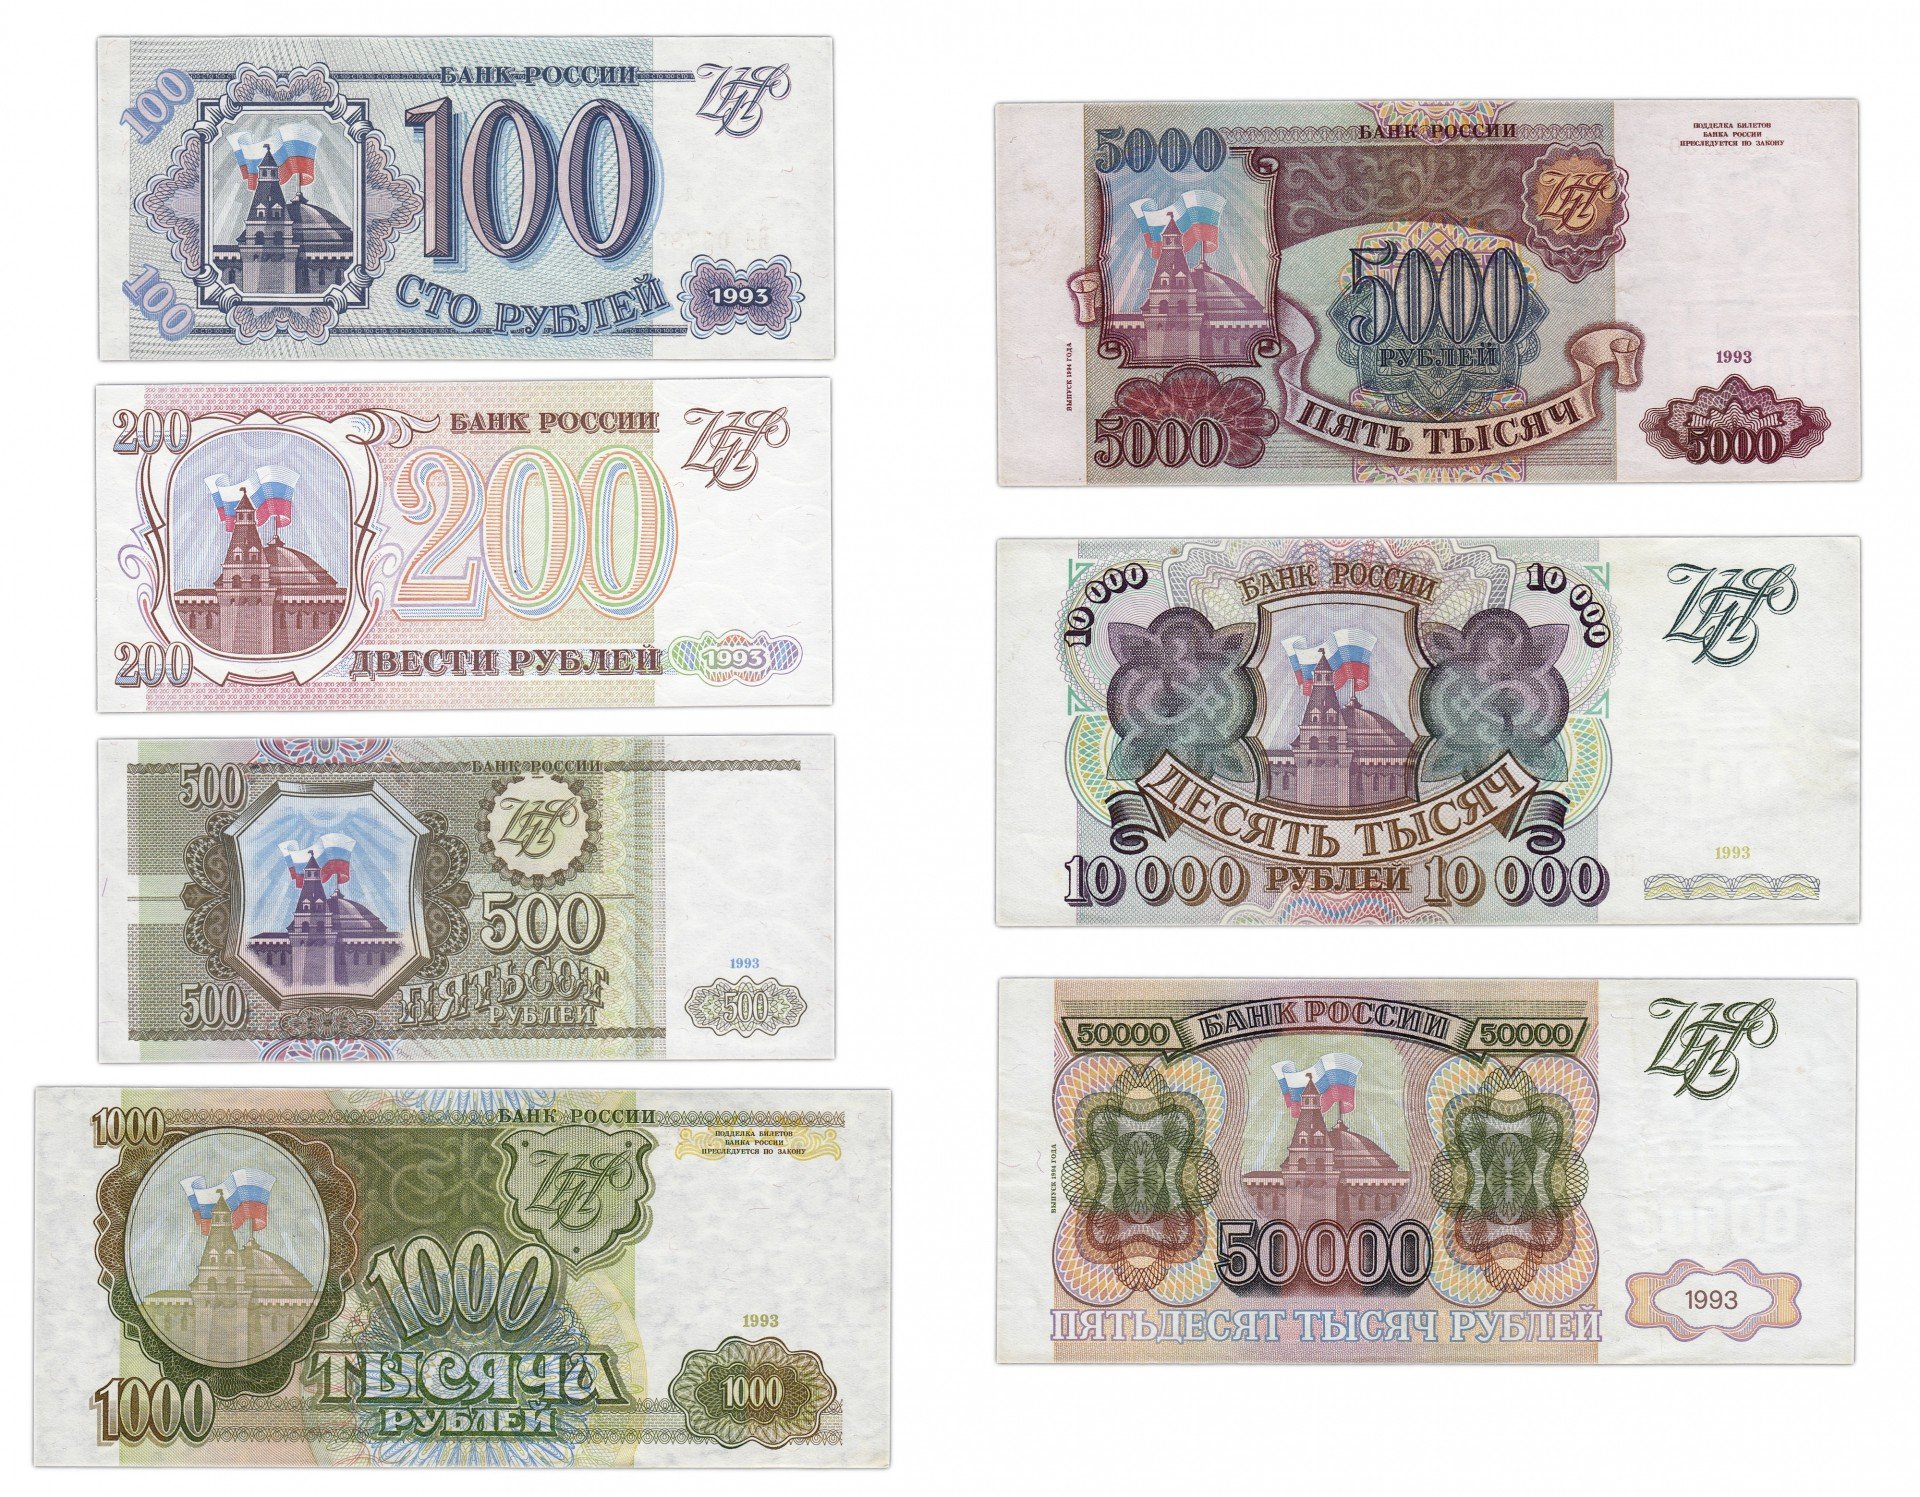 500 и 5000 рублей. Купюры 100, 200, 500 рублей 1993 года. Бумажные купюры 1993 года. Банкноты образца 1993 года. Деньги в 1993 году в России.